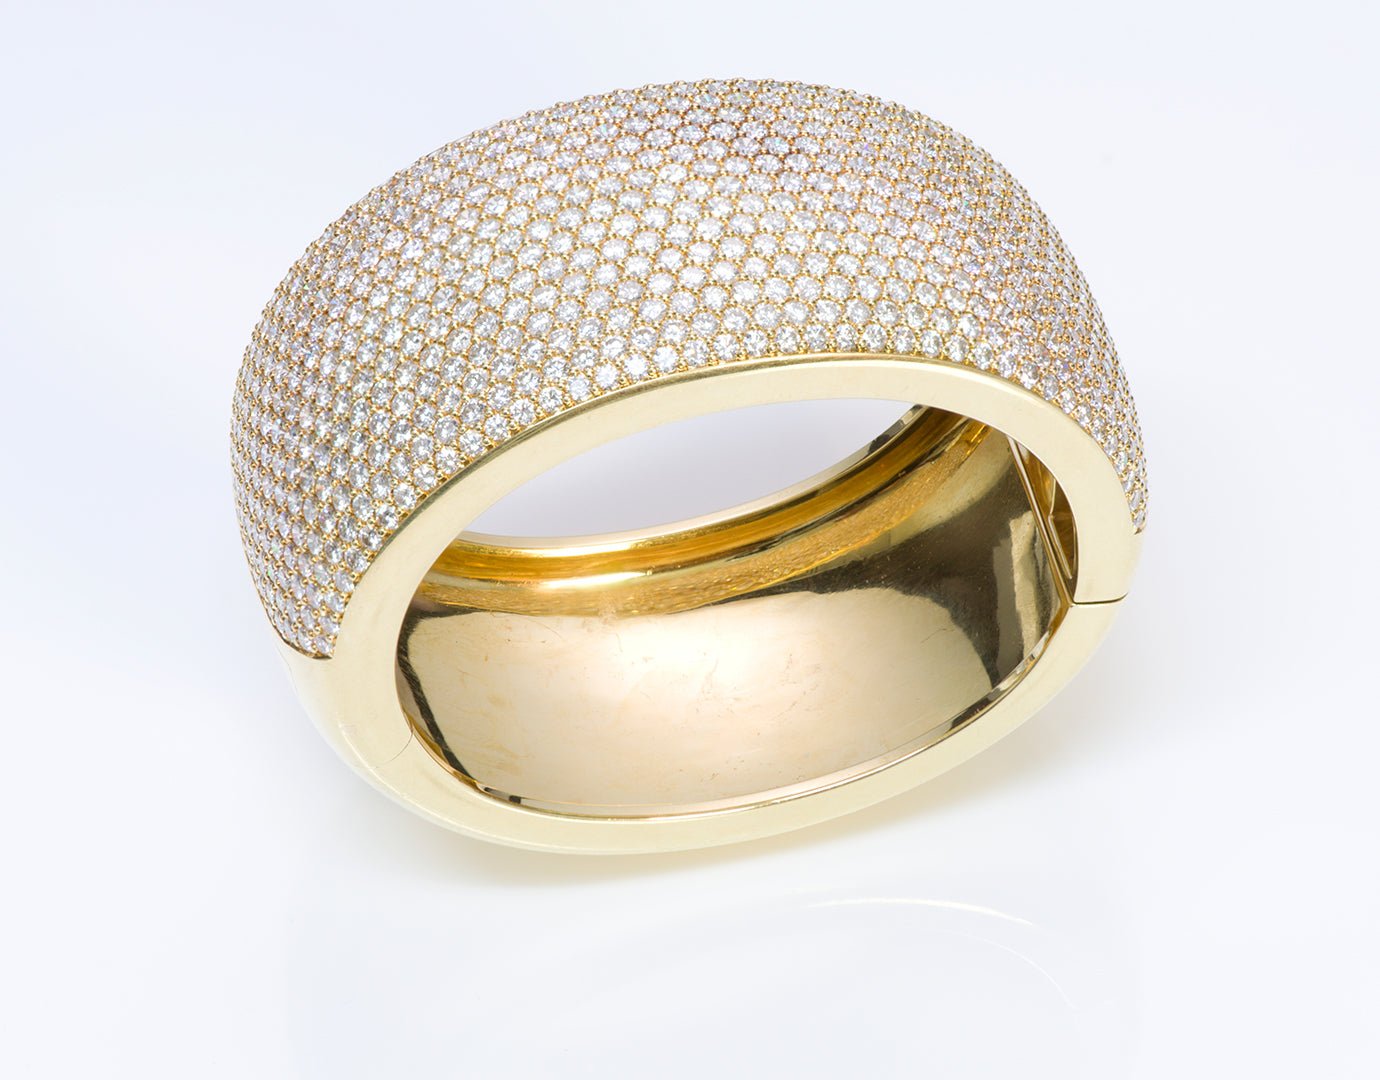 Kurt Wayne Pave Diamond 18K Gold Bangle Bracelet